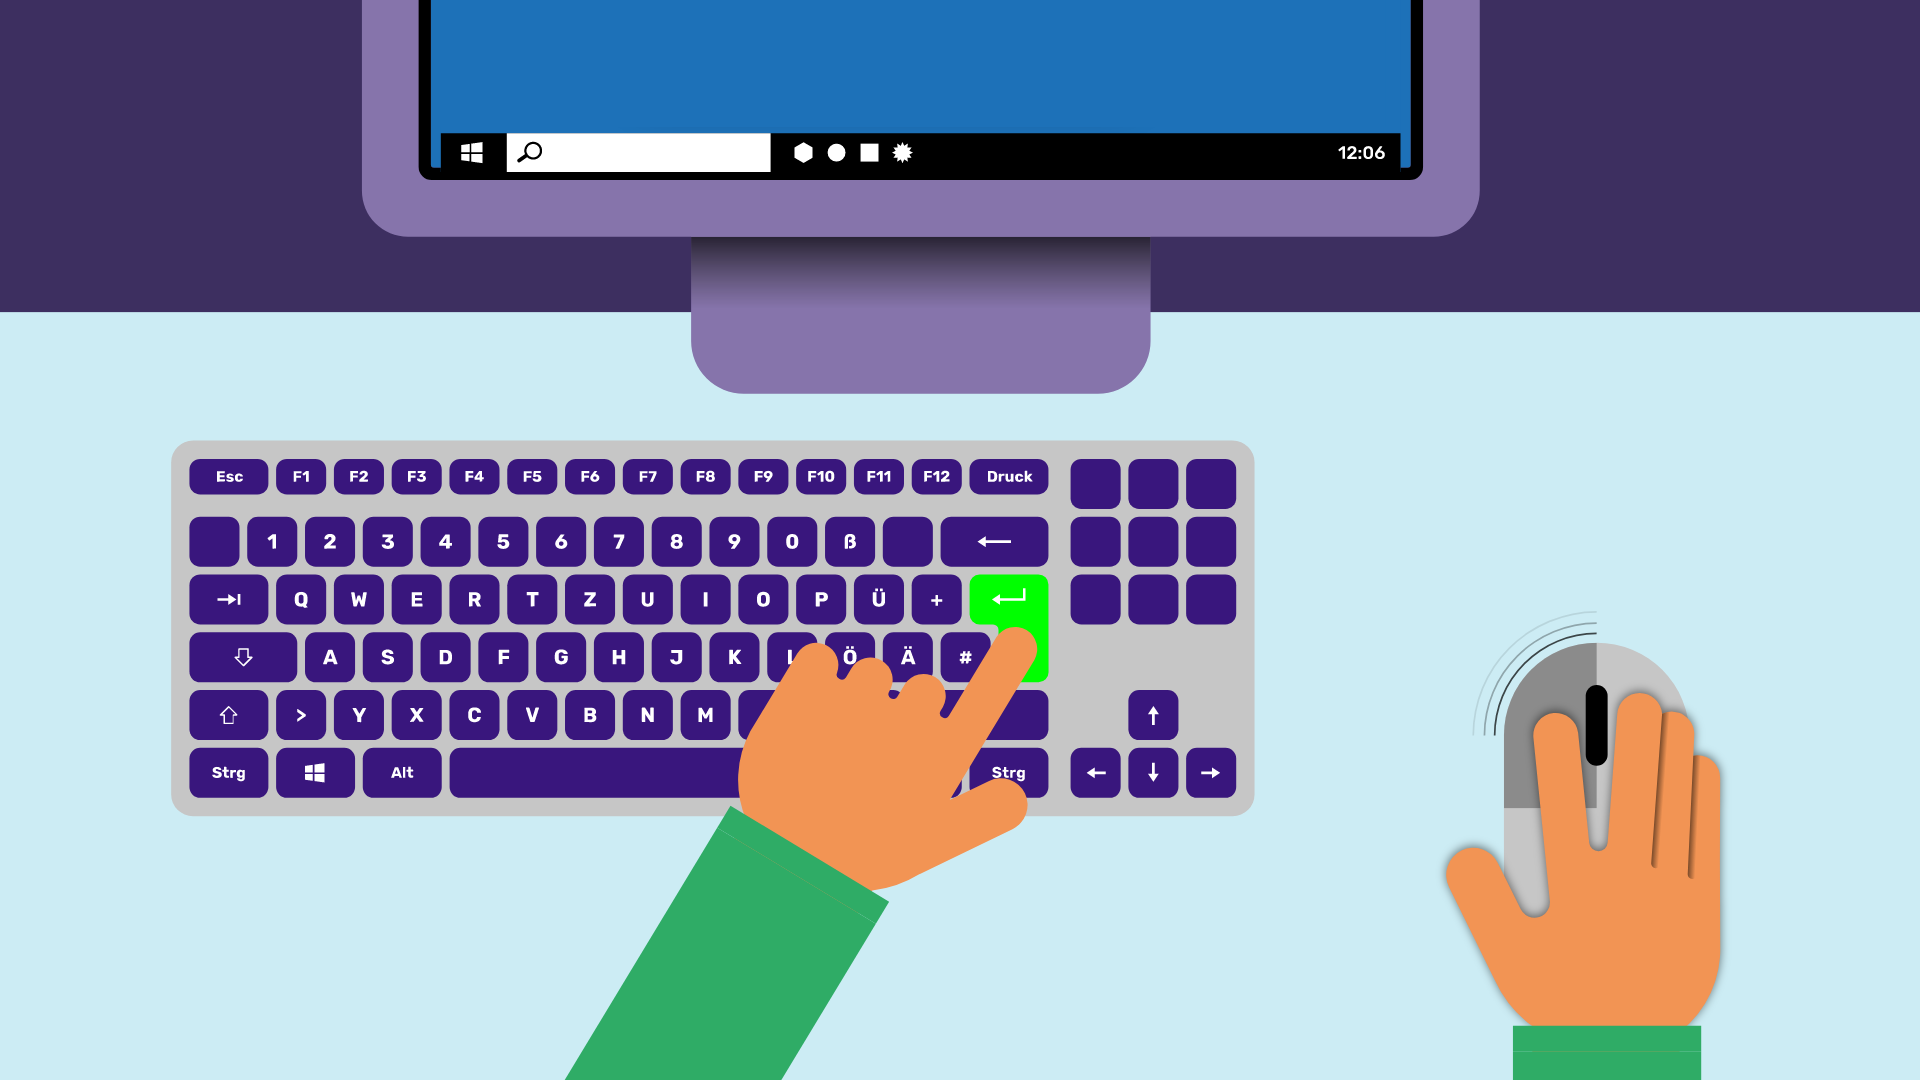 Ein Computer mit Maus und Tastatur. Eine Hand zeigt auf die grün markierte Enter Taste. Die andere Hand liegt auf der Maus und klickt die linke Maustaste.